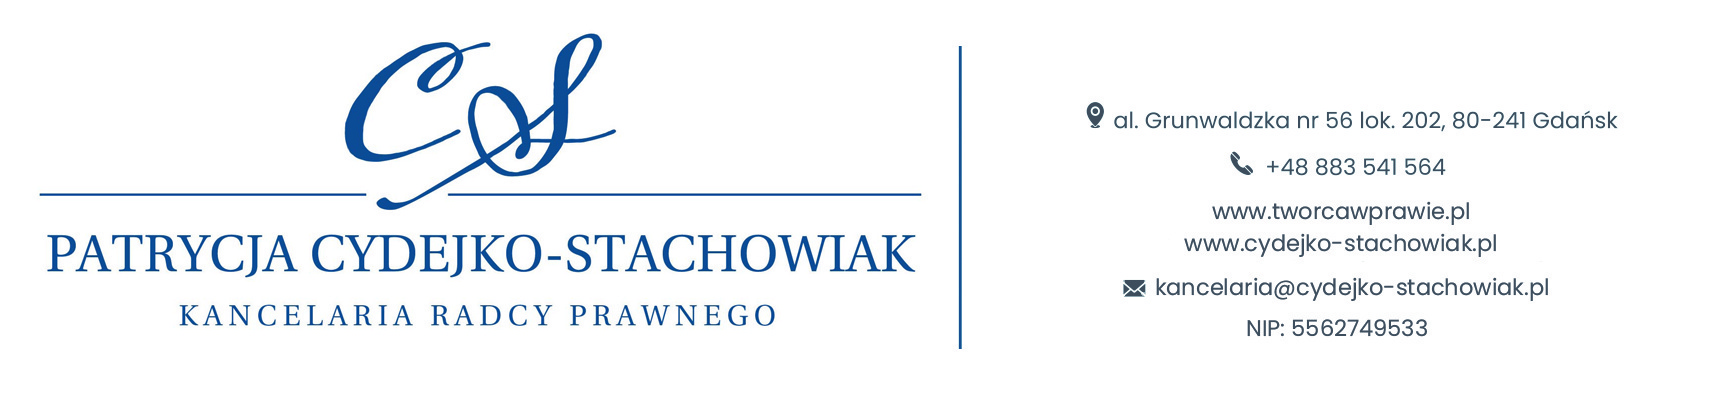 Kancelaria prawna dla tw贸rc贸w | Patrycja Cydejko-Stachowiak